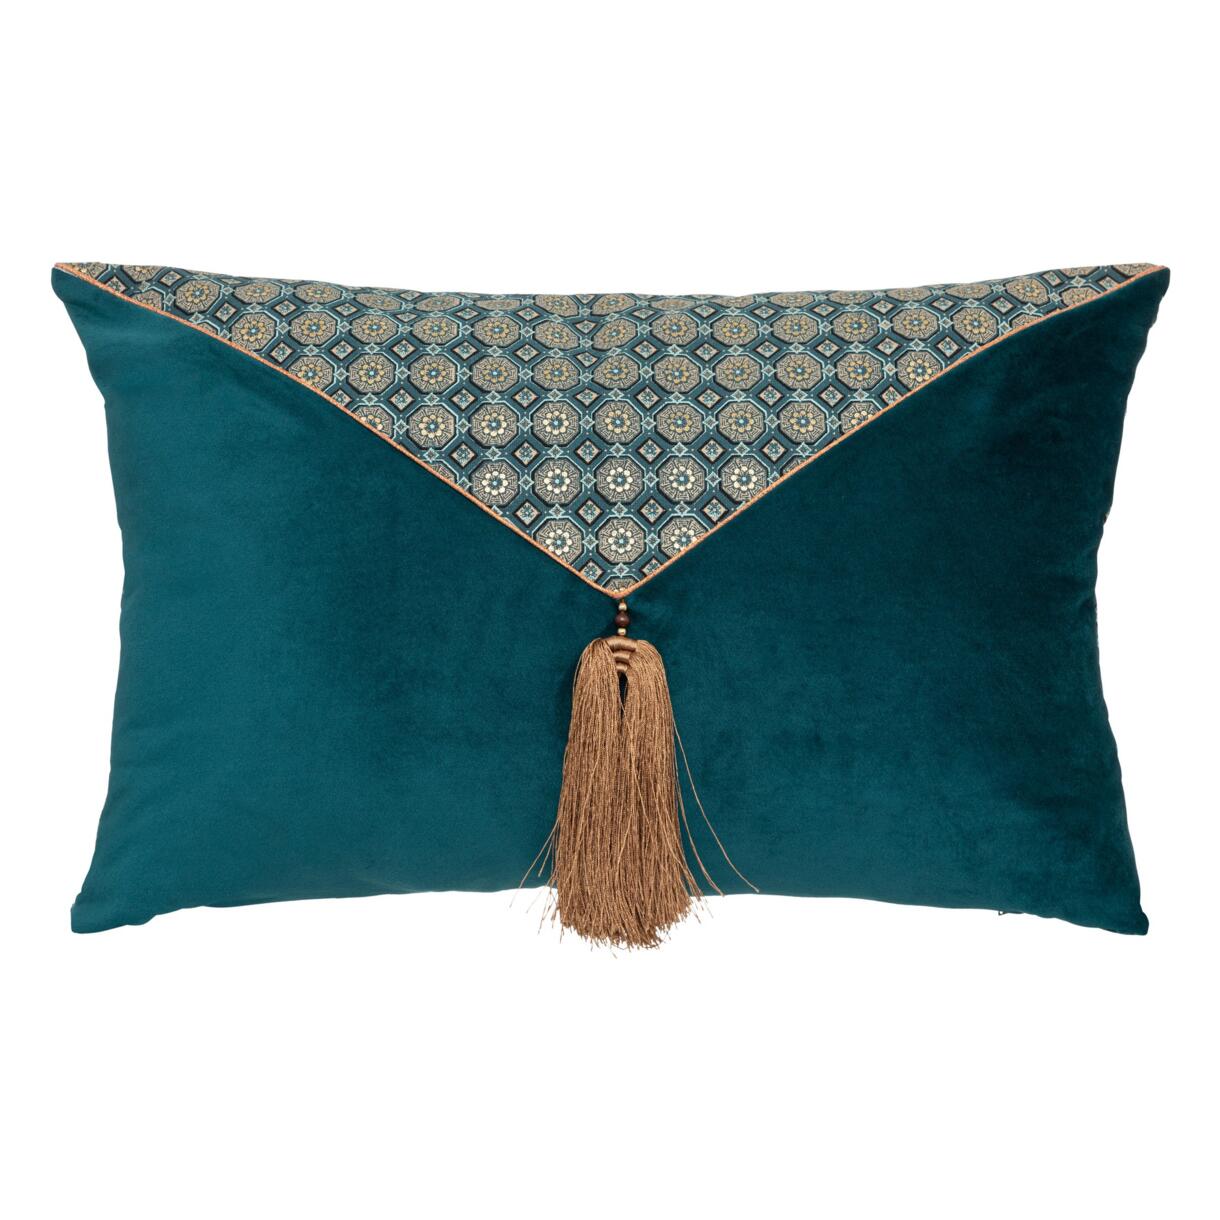 Cuscino rettangolare in velluto (58 cm) Pampille Blu smeraldo